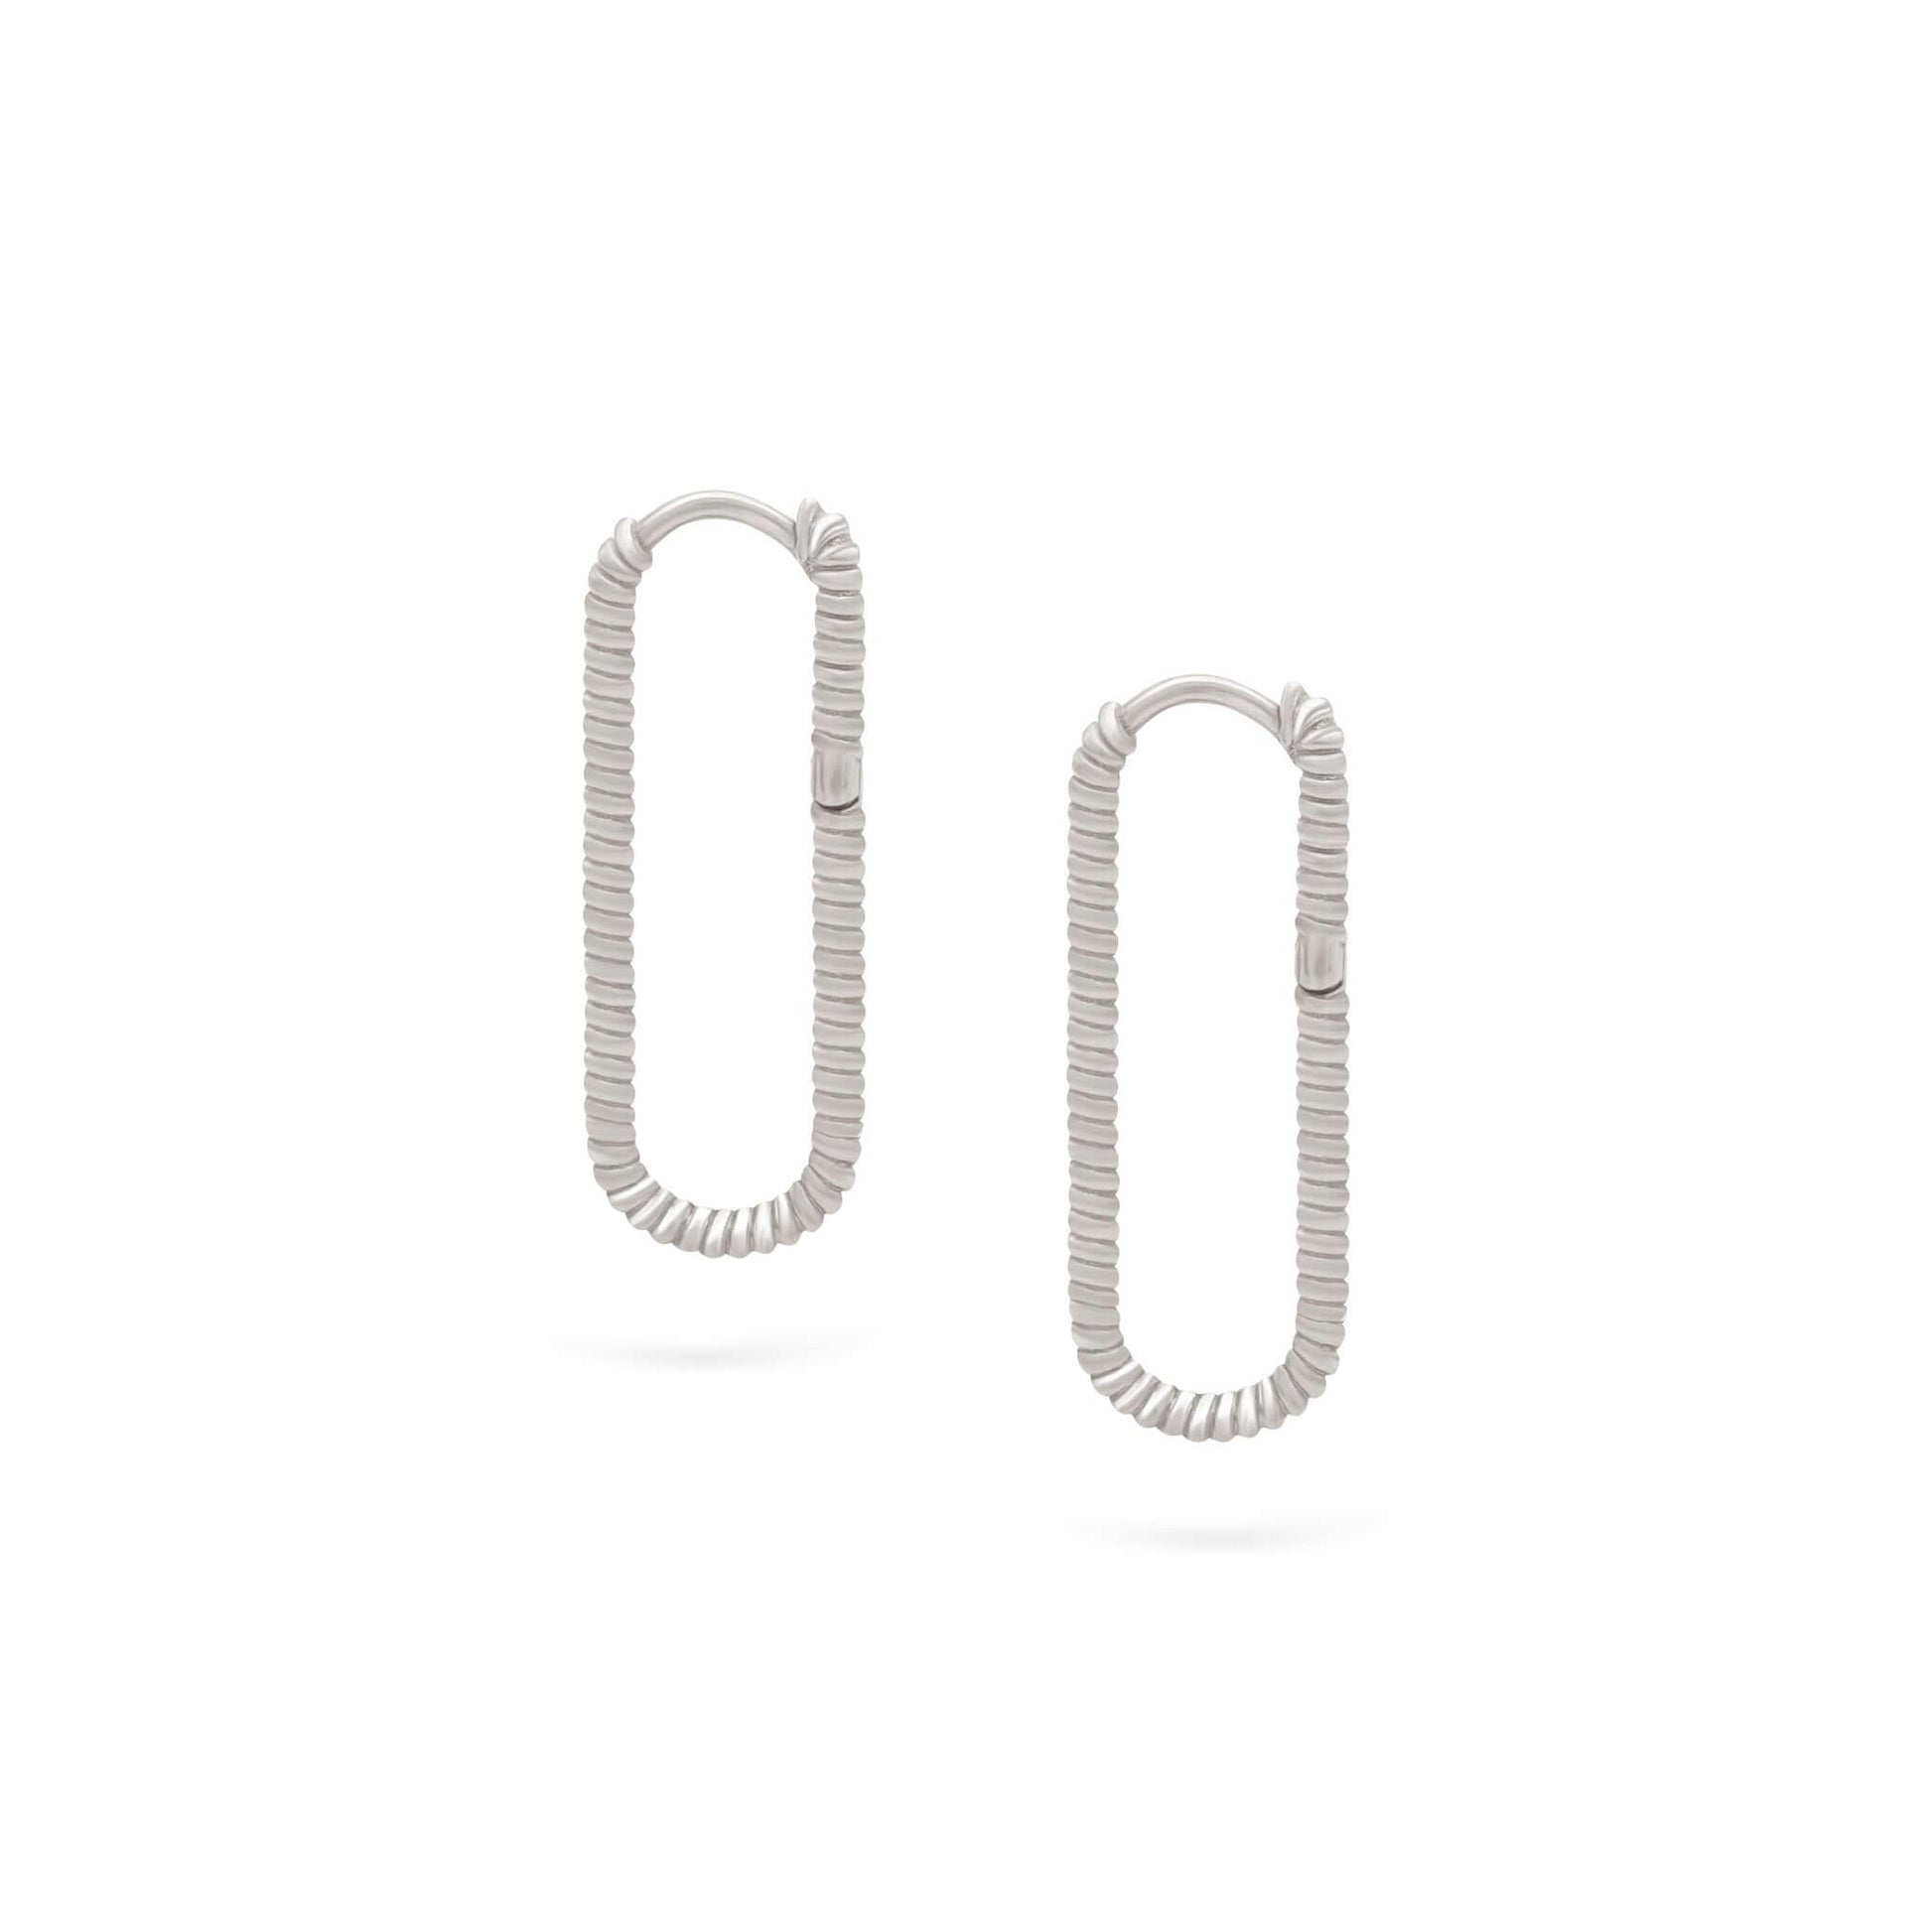 Jewelry Twist Hoops | Large Gold Earrings | 14K - White / Pair - Diamond earrings Zengoda Shop online from